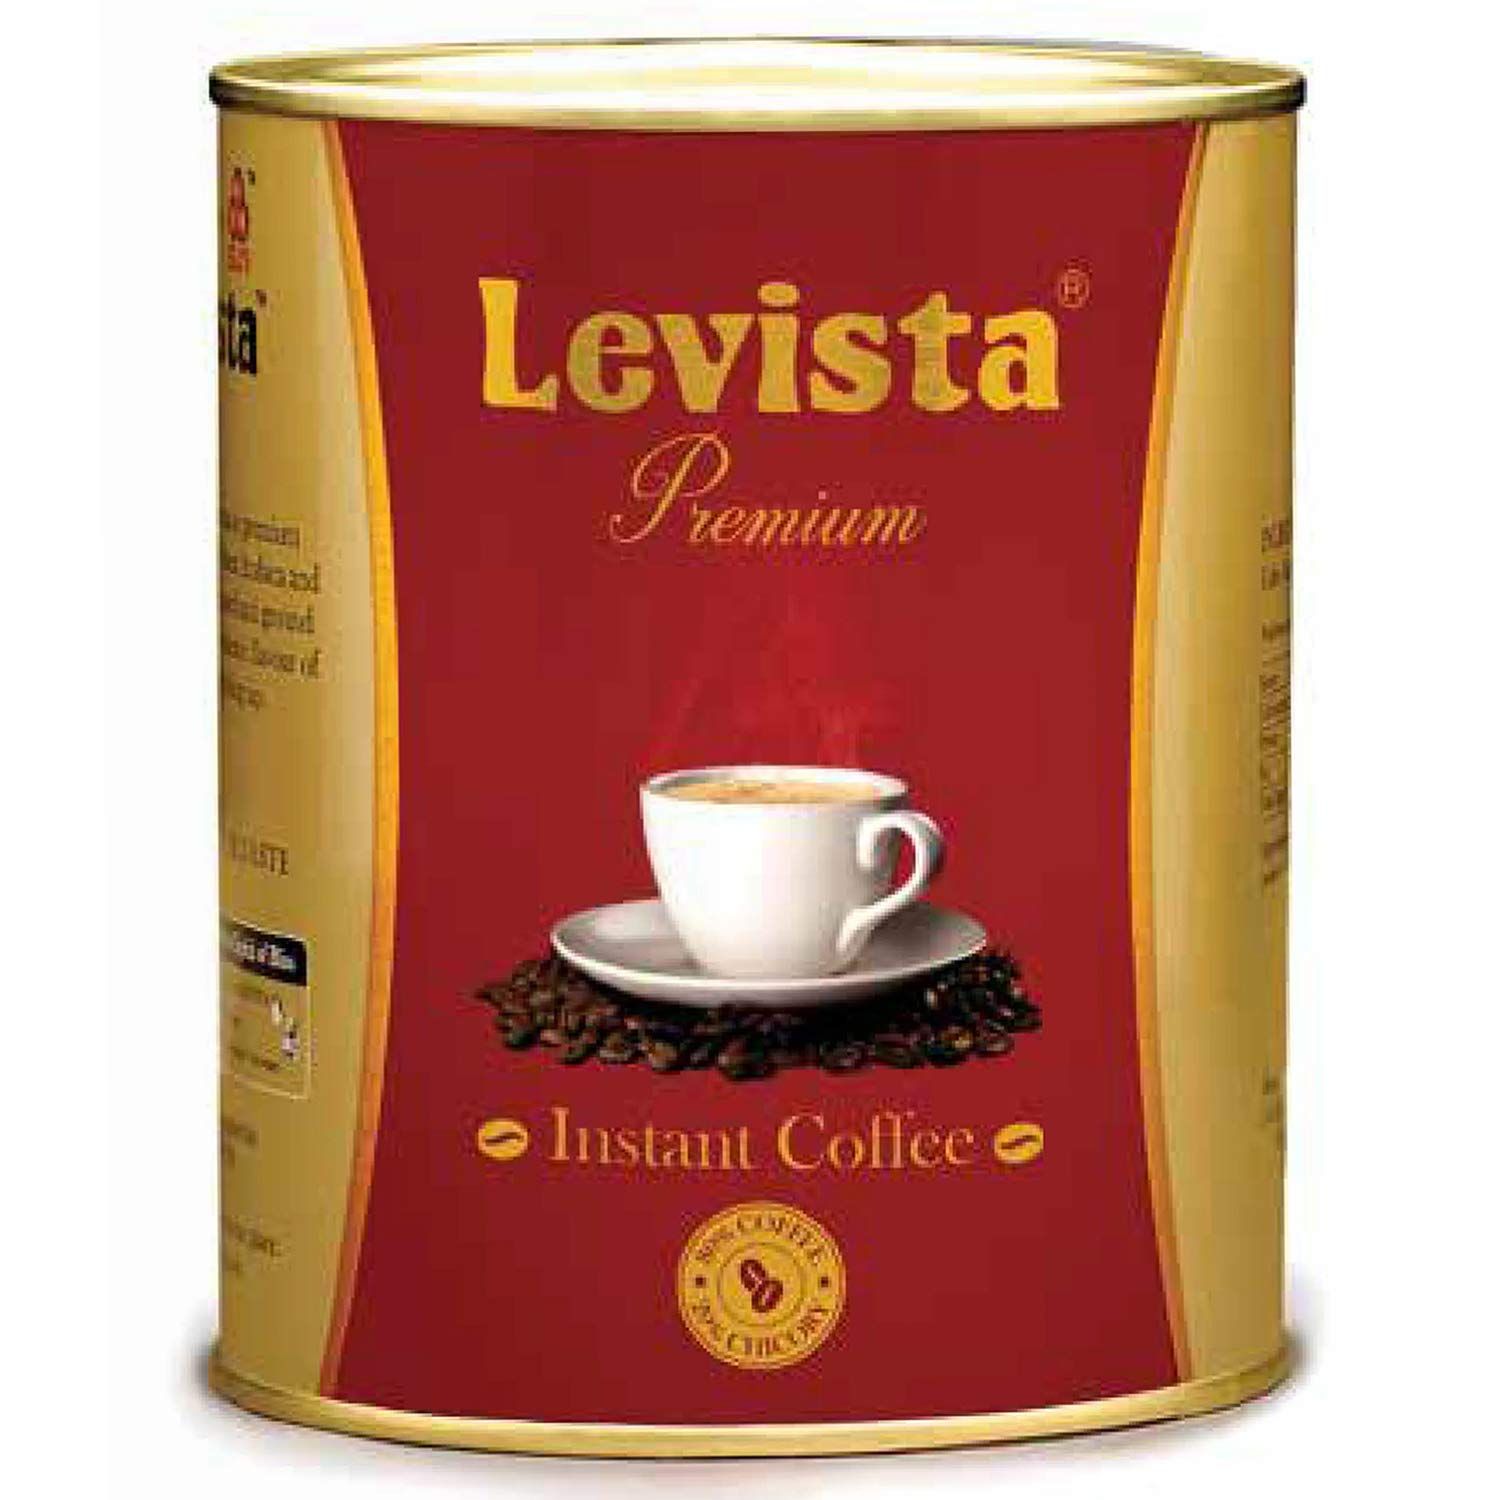 Levista Premium Instant Coffee Image